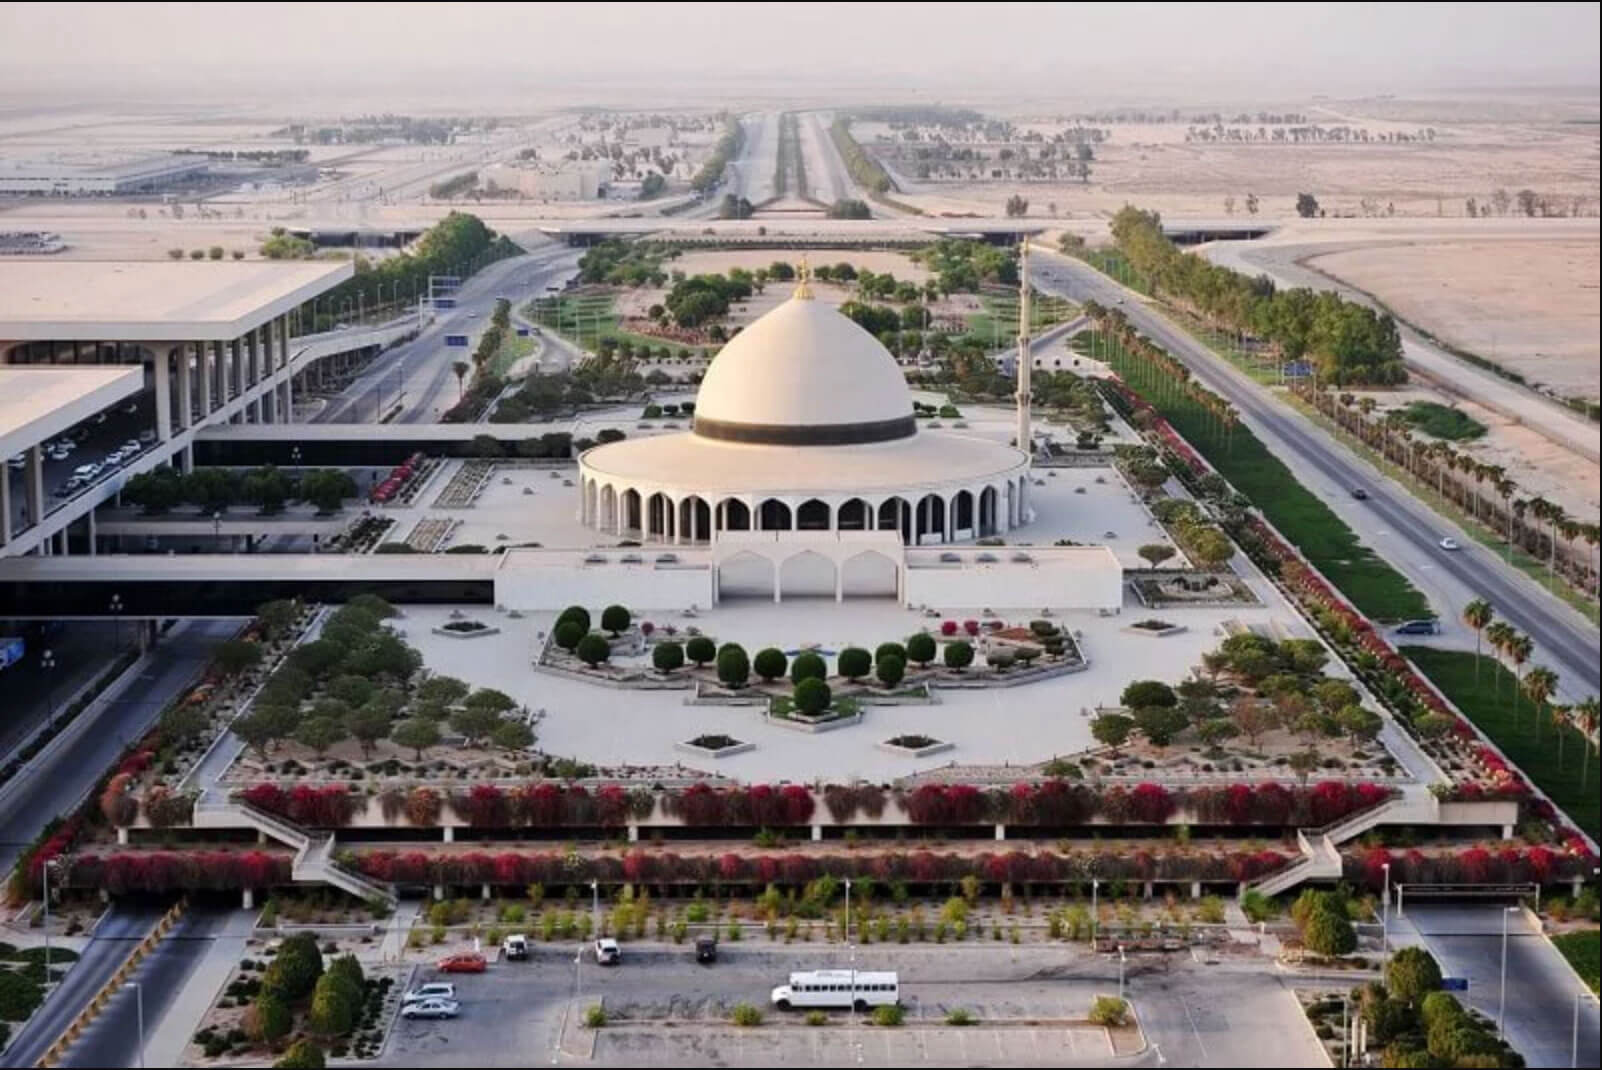 Cele mai mari aeroporturi din lume. Aeroportul internațional King Fahd (DMM)